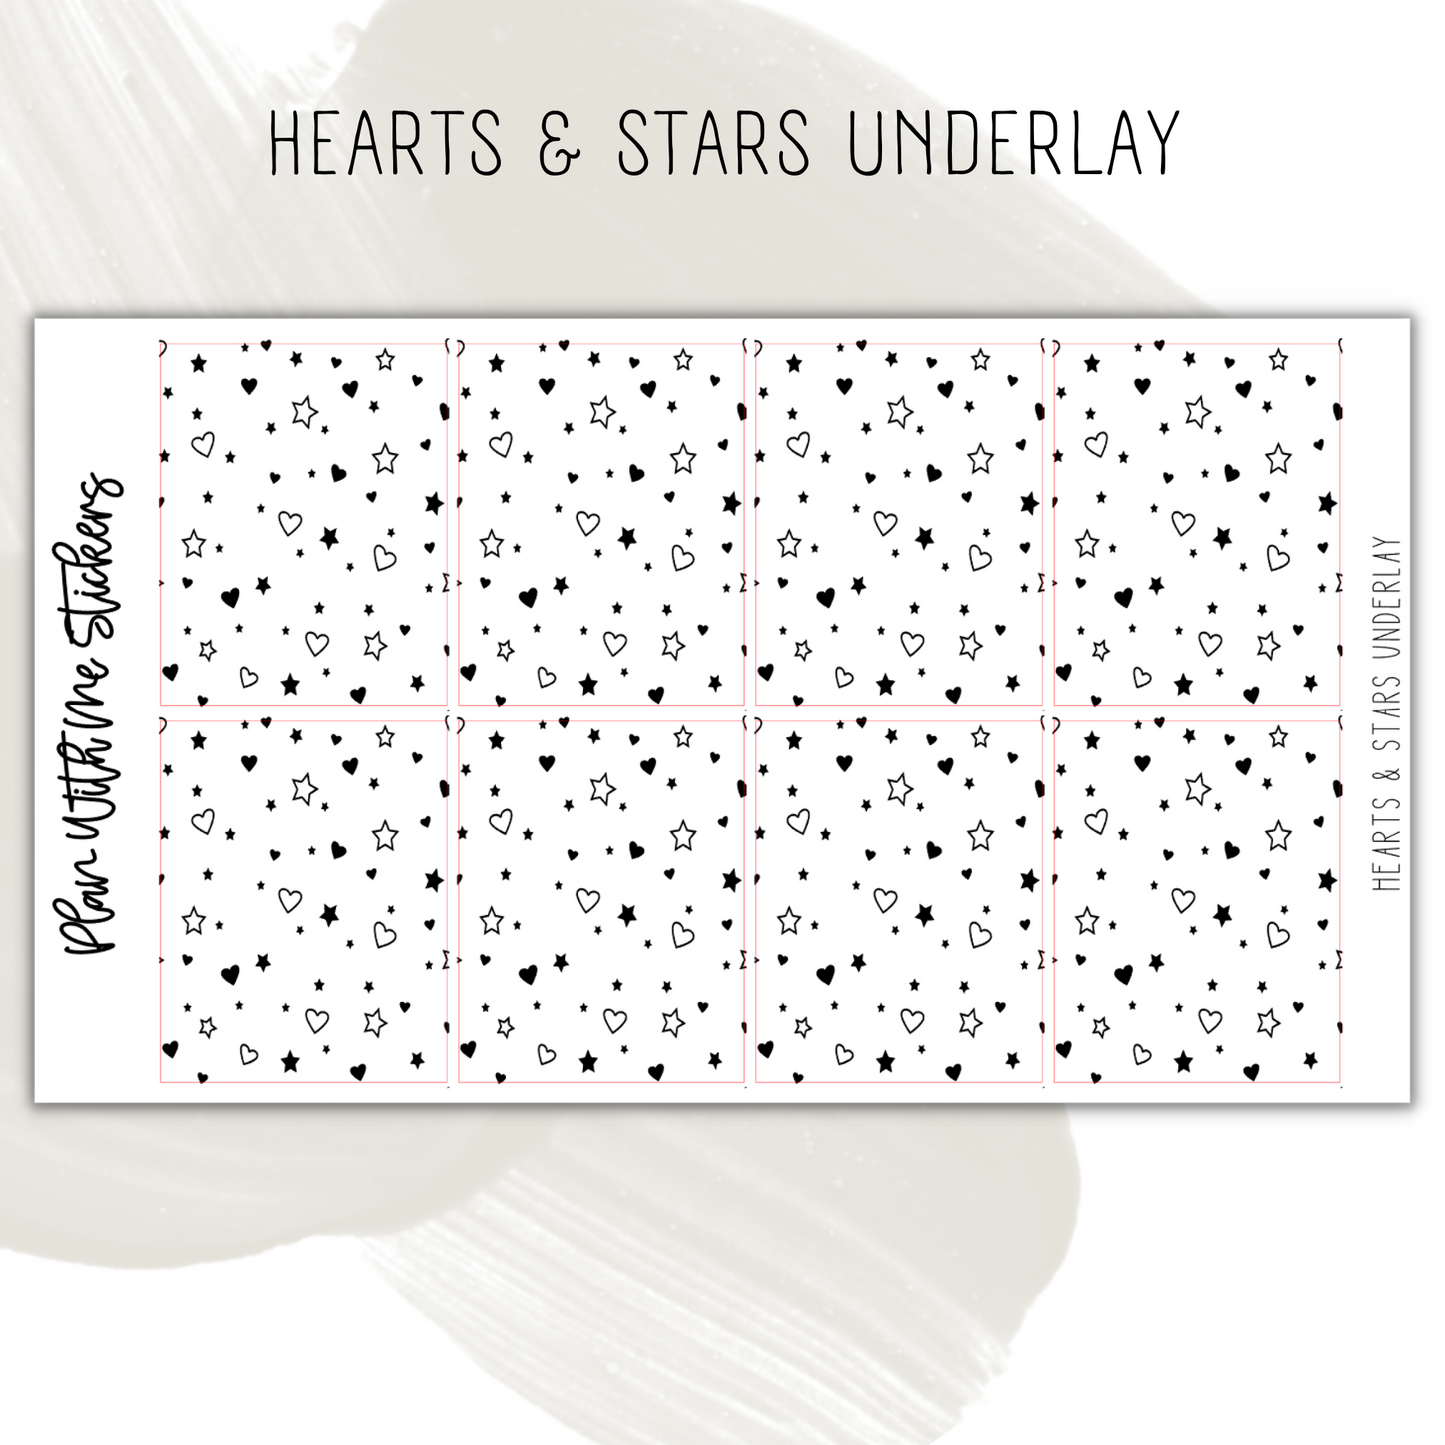 Hearts & Stars Underlay